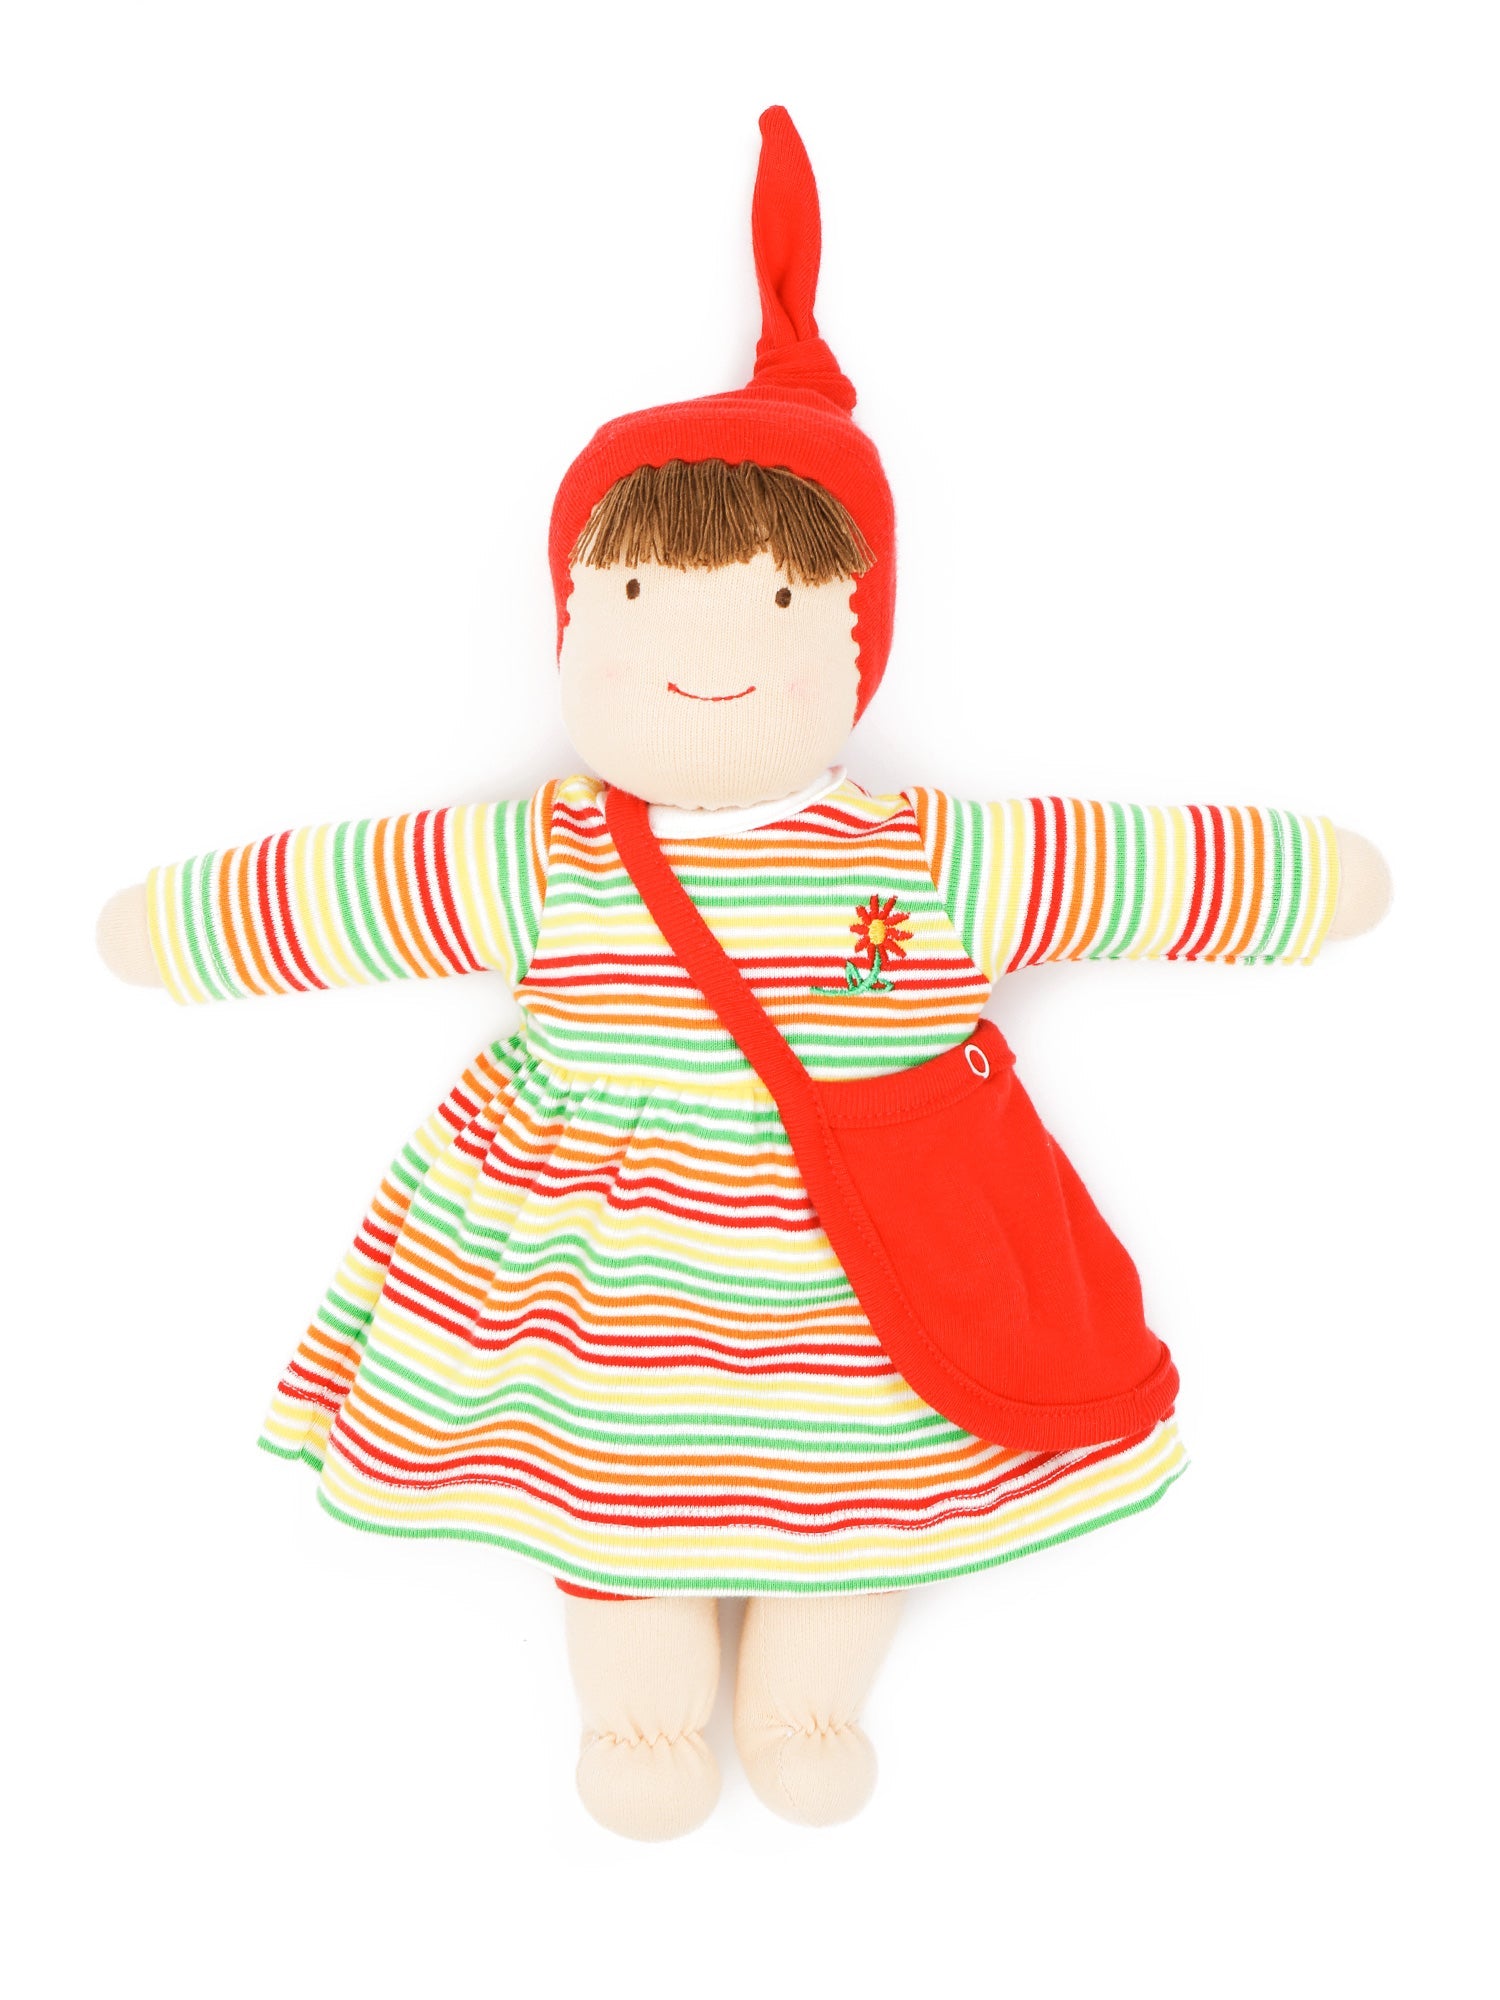 Jill Waldorf Dress Up Doll in Rainbow Stripes